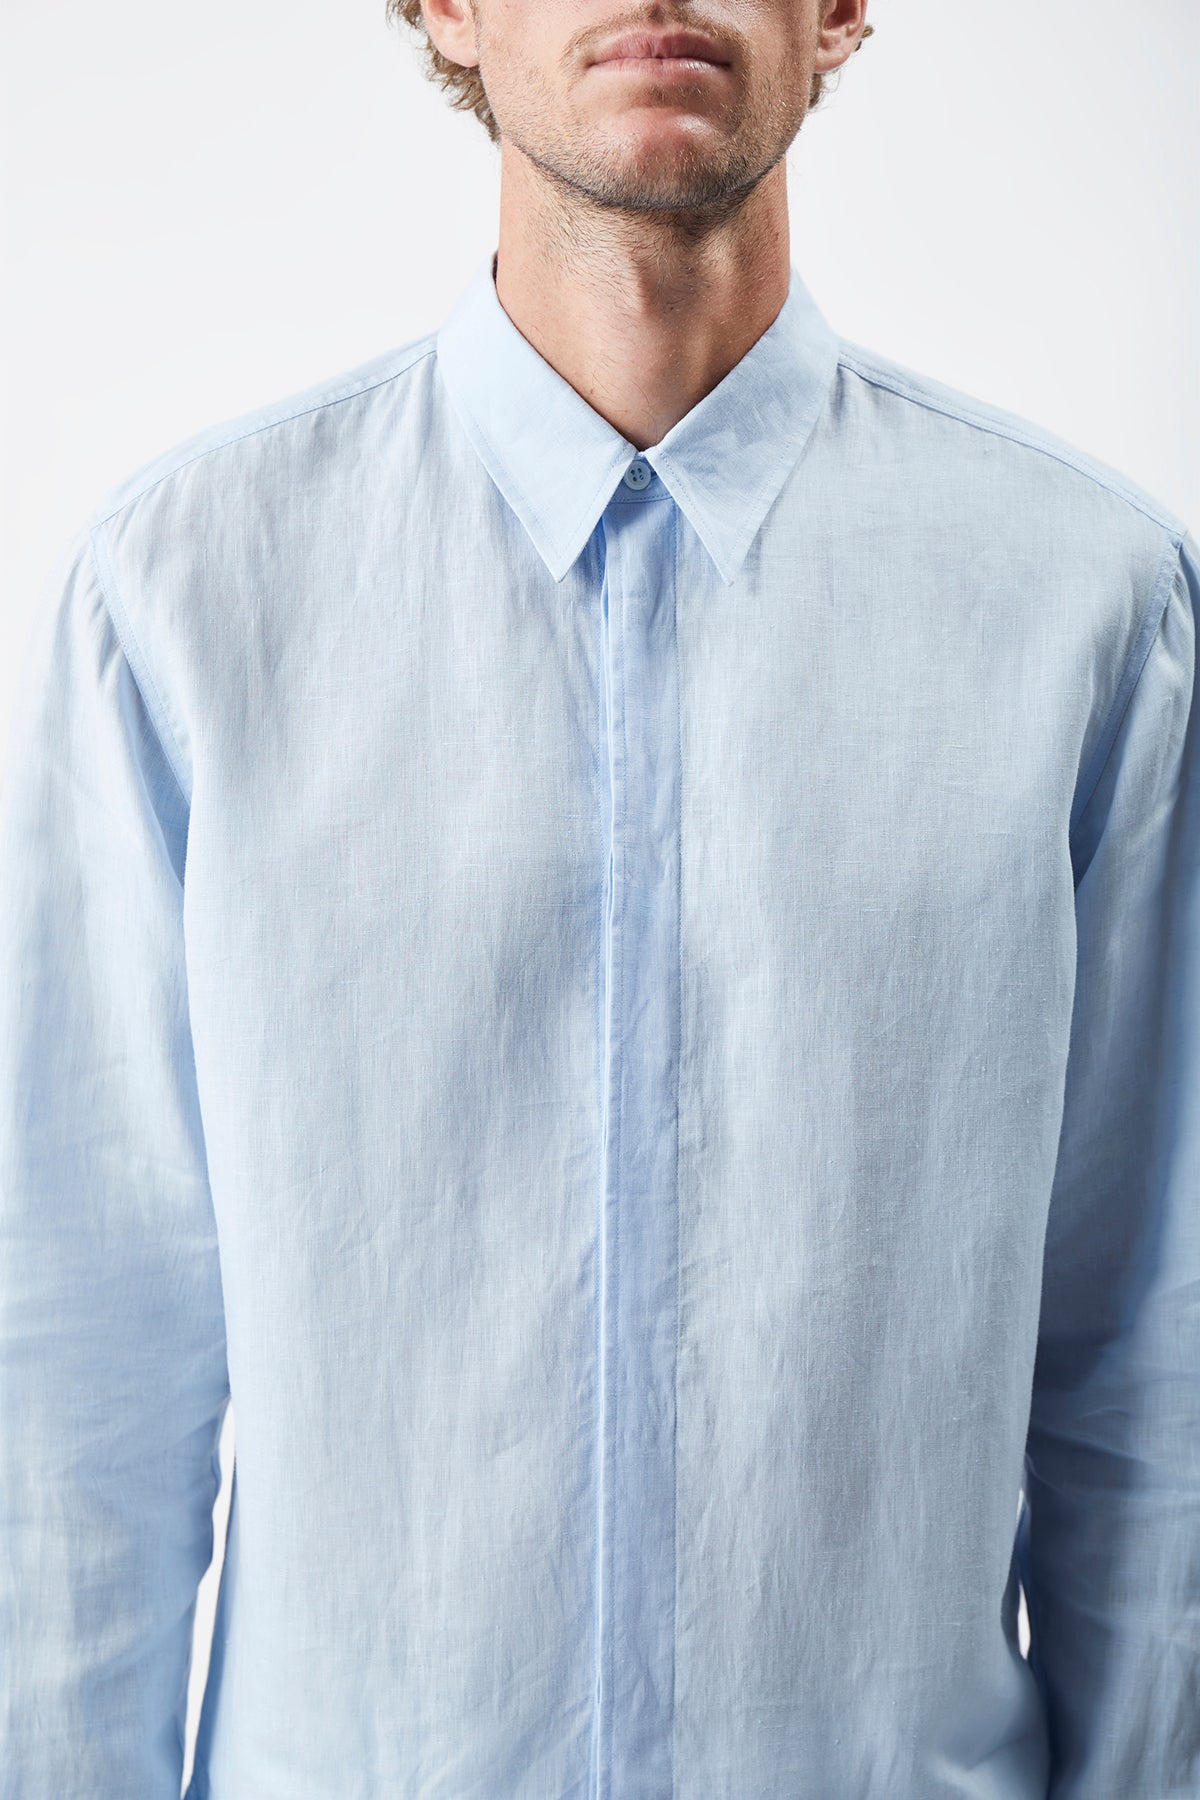 Quevedo Shirt in Light Blue Linen